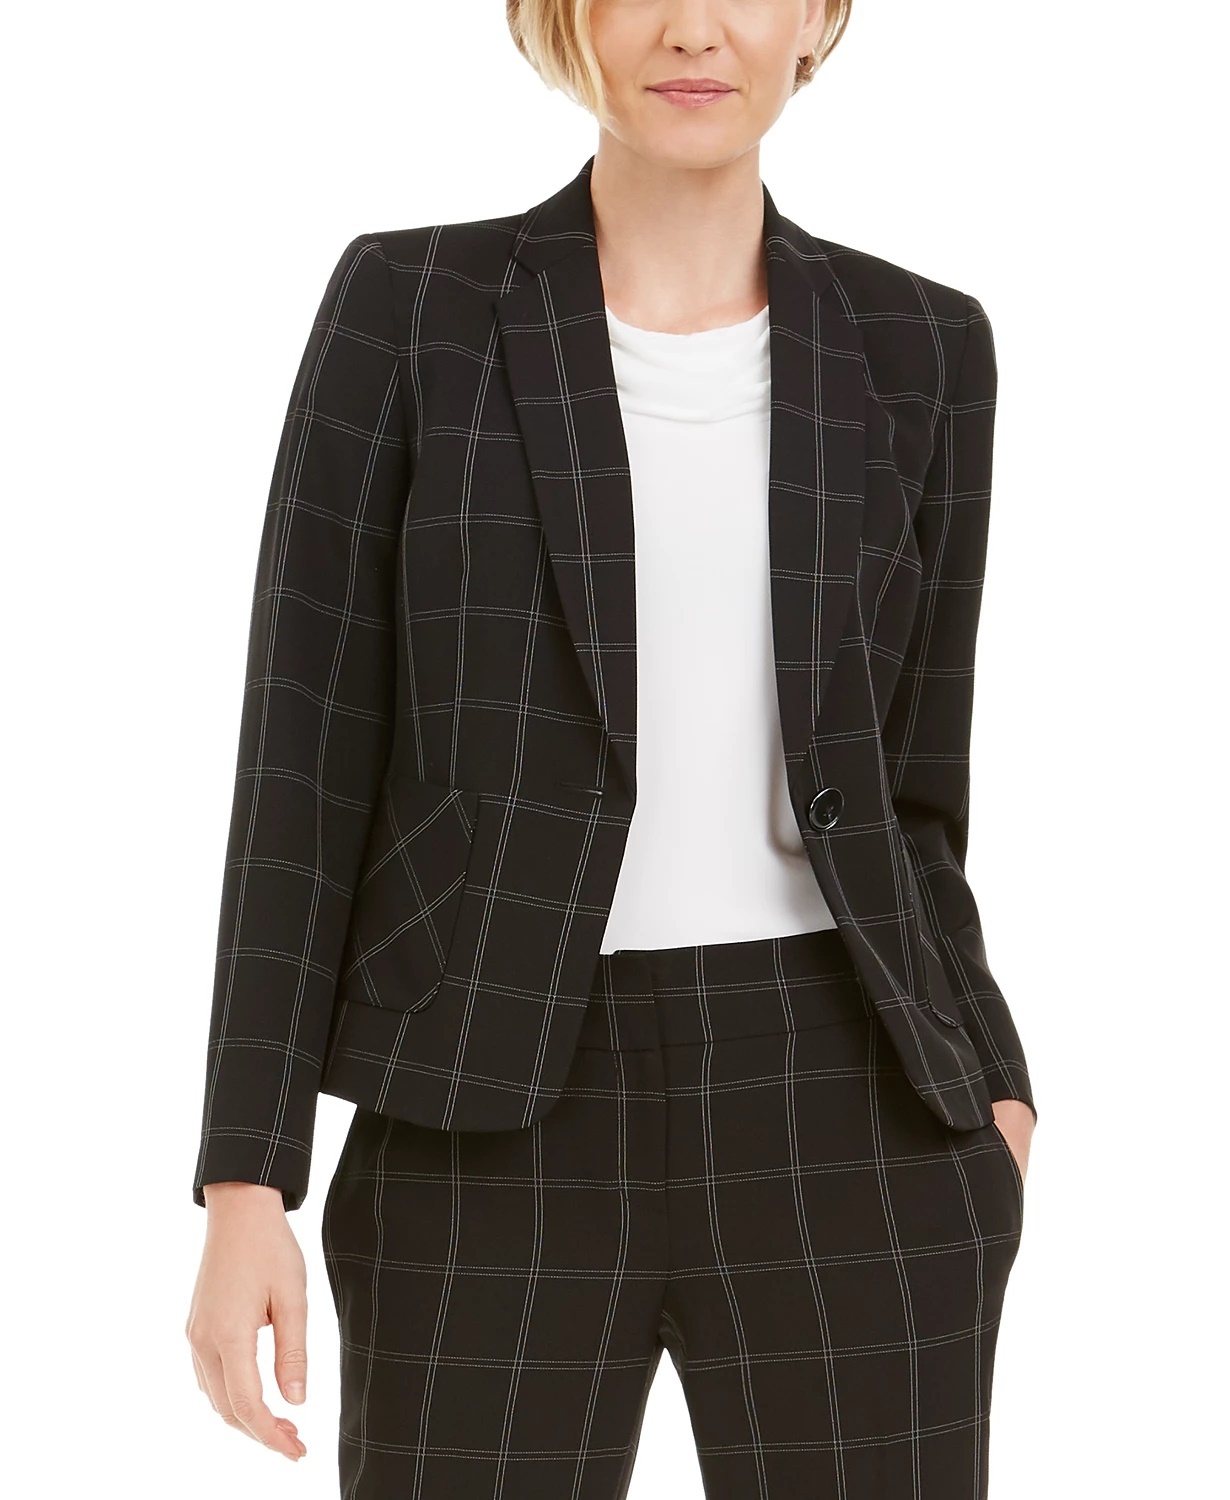 Size 12 Women's Blazers, Jackets & Vests - Sears